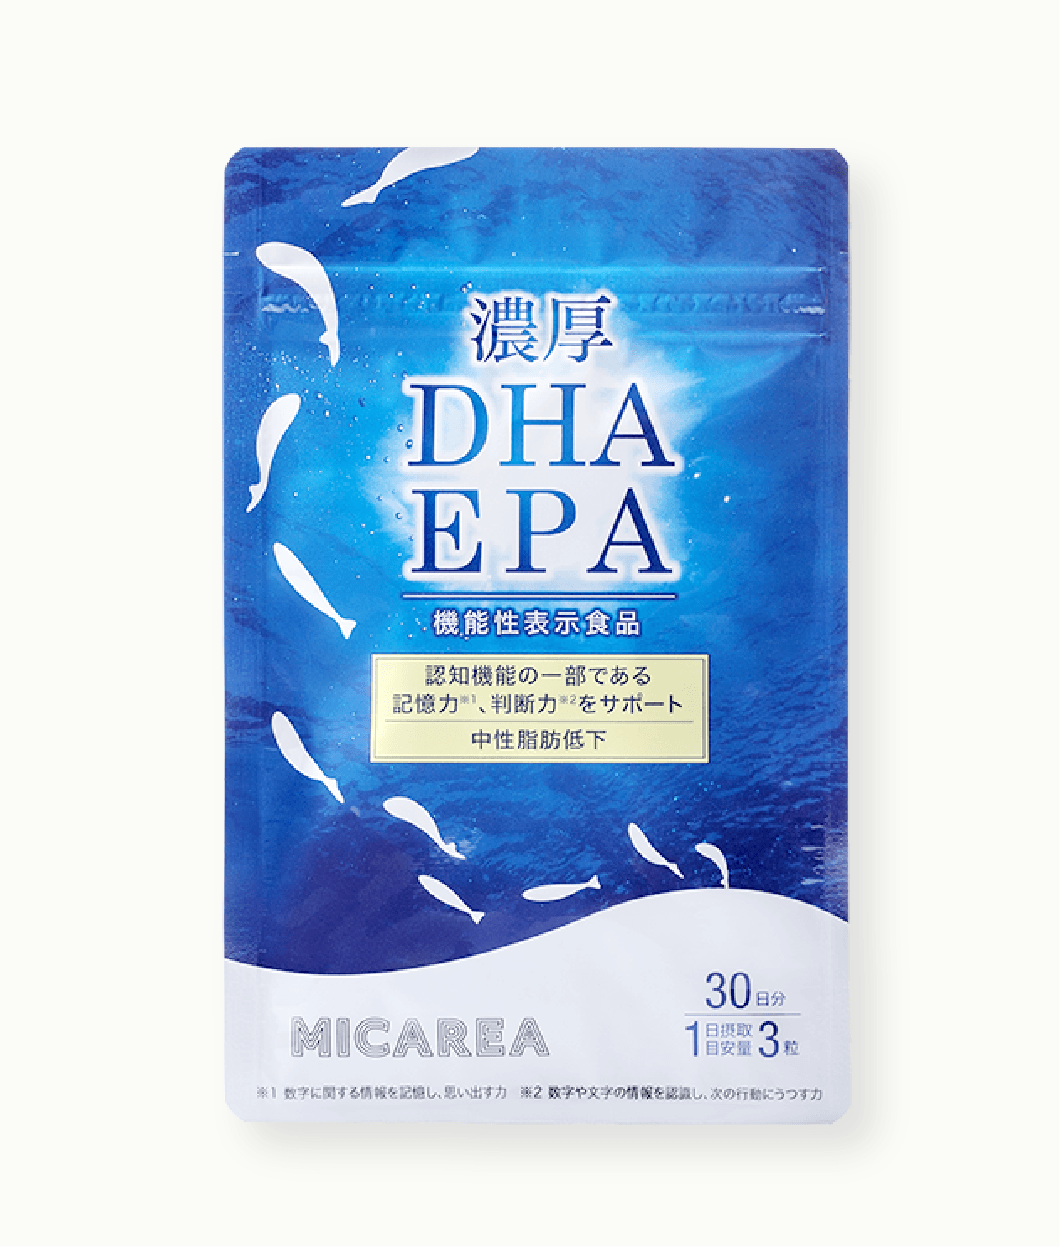 ミカレアの濃厚DHA・EPA